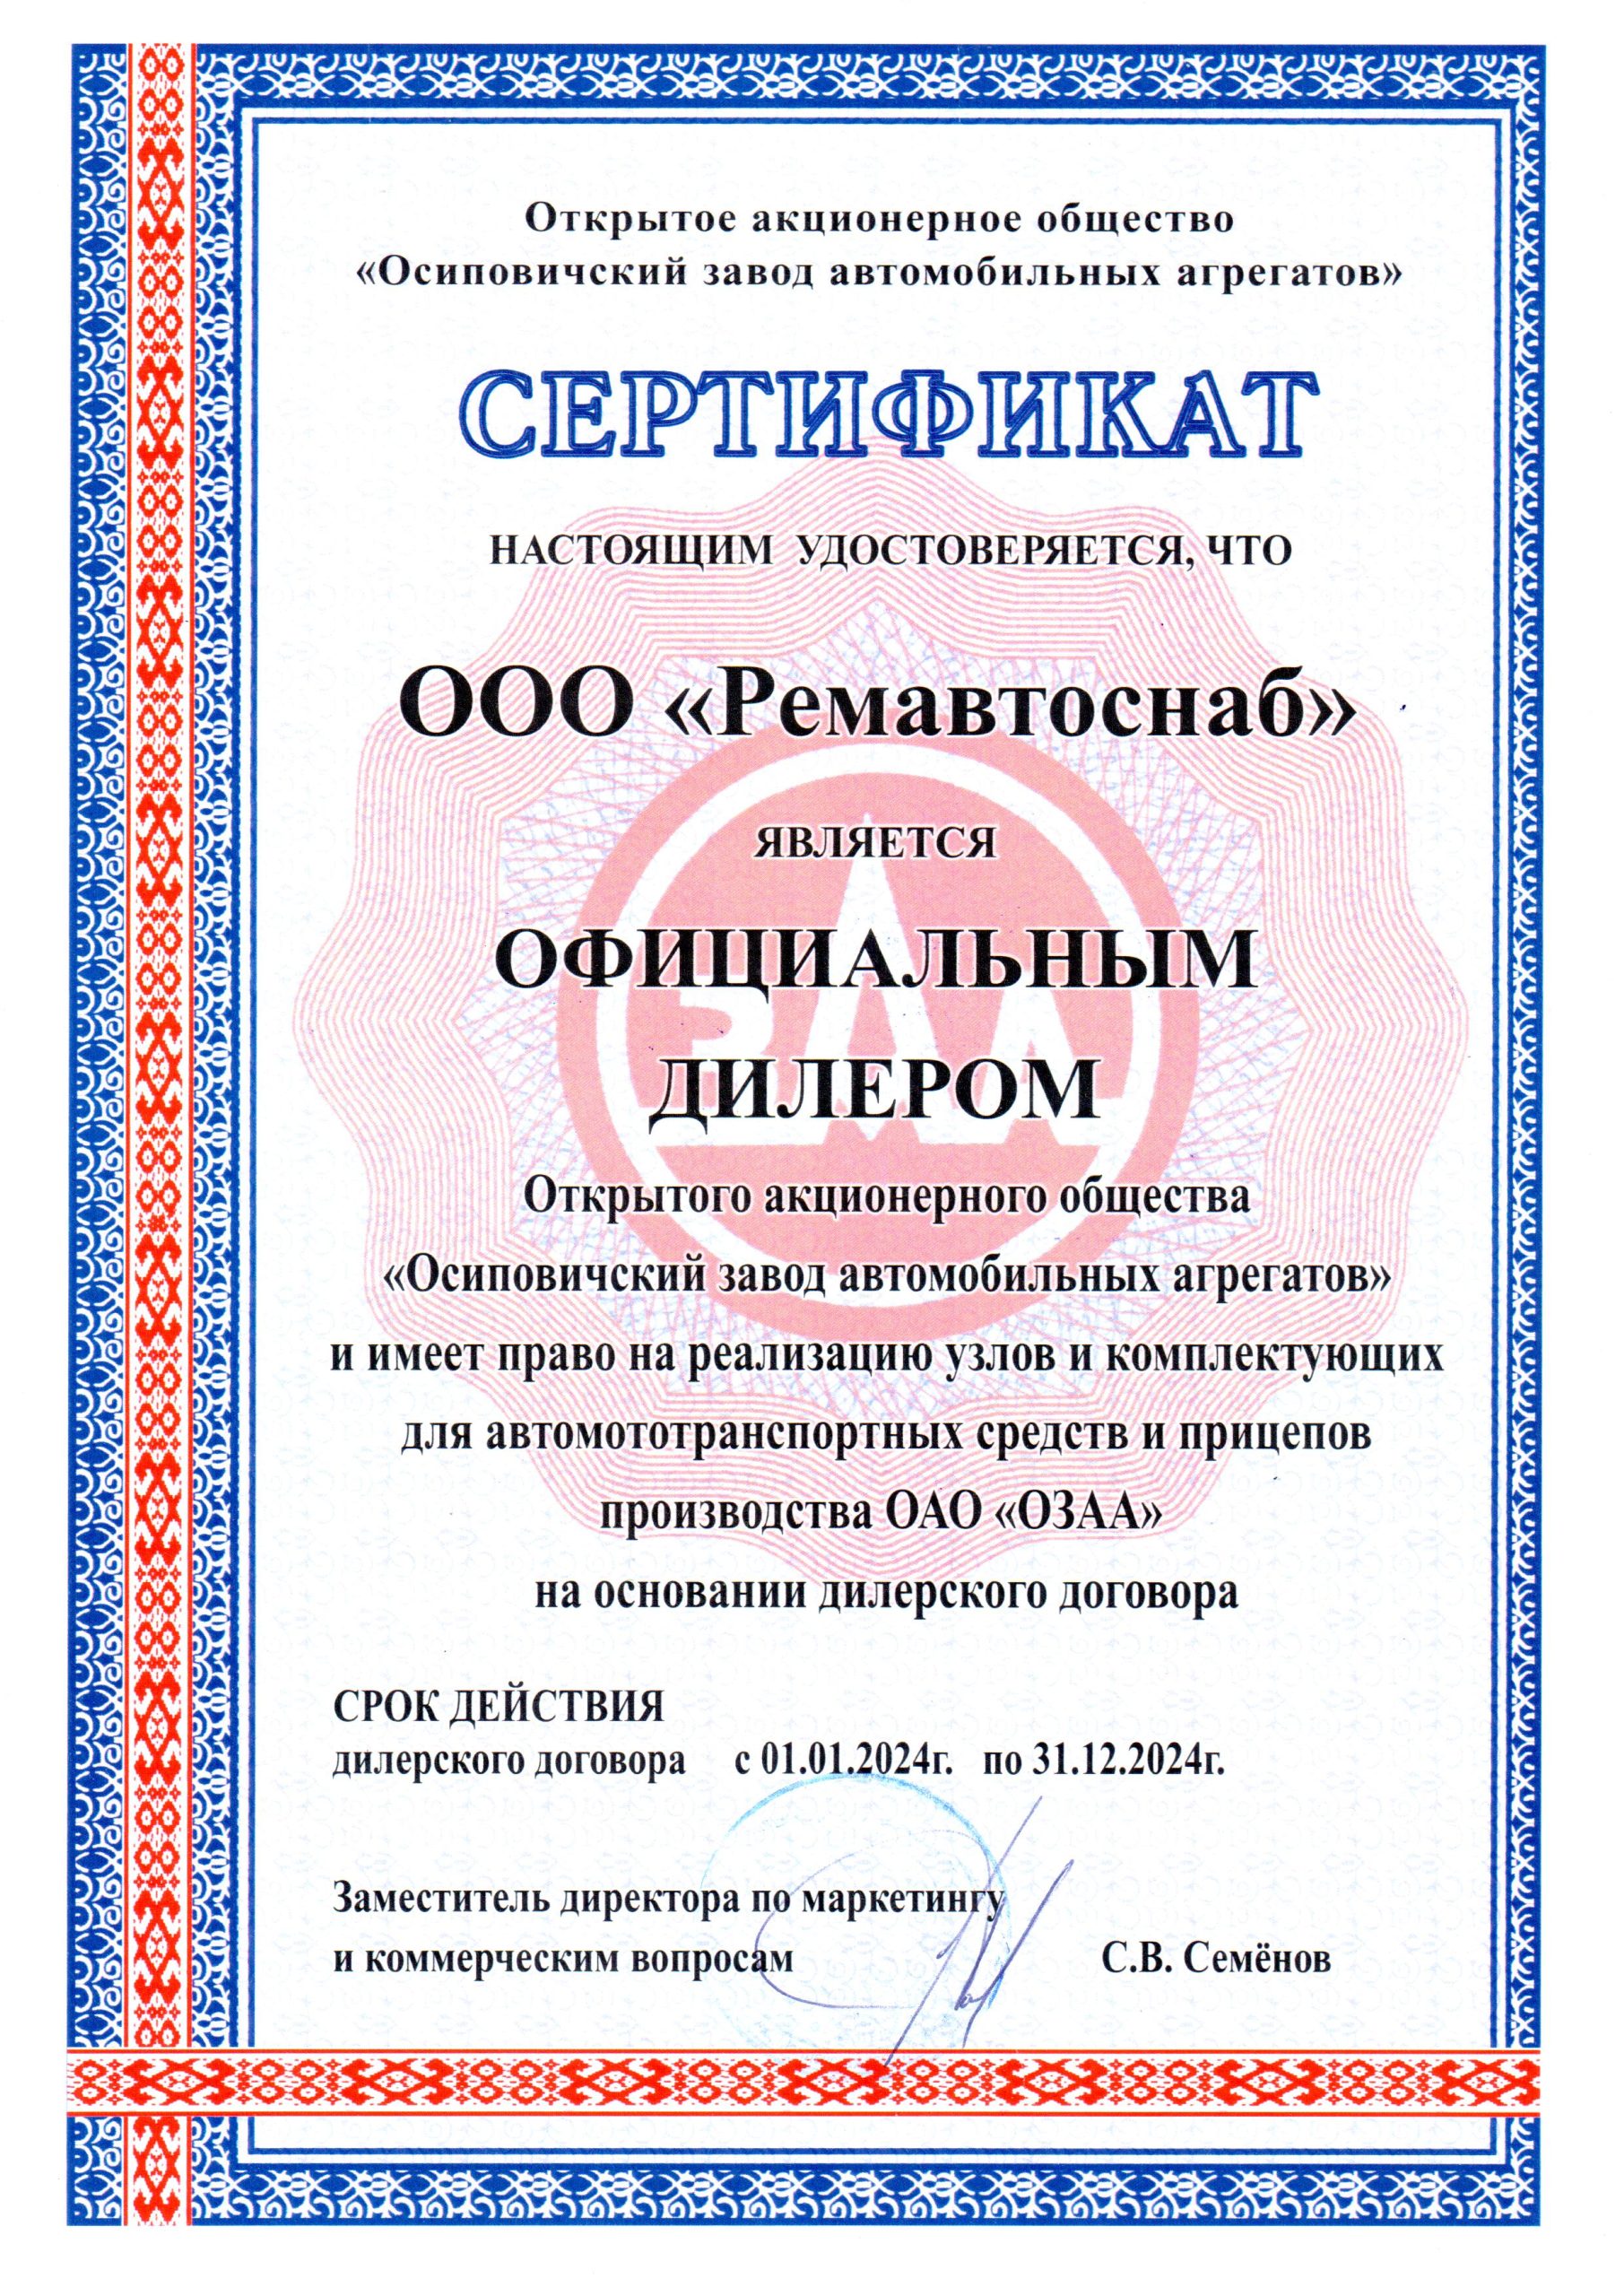 Сертификат дилера ОАО ОЗАА